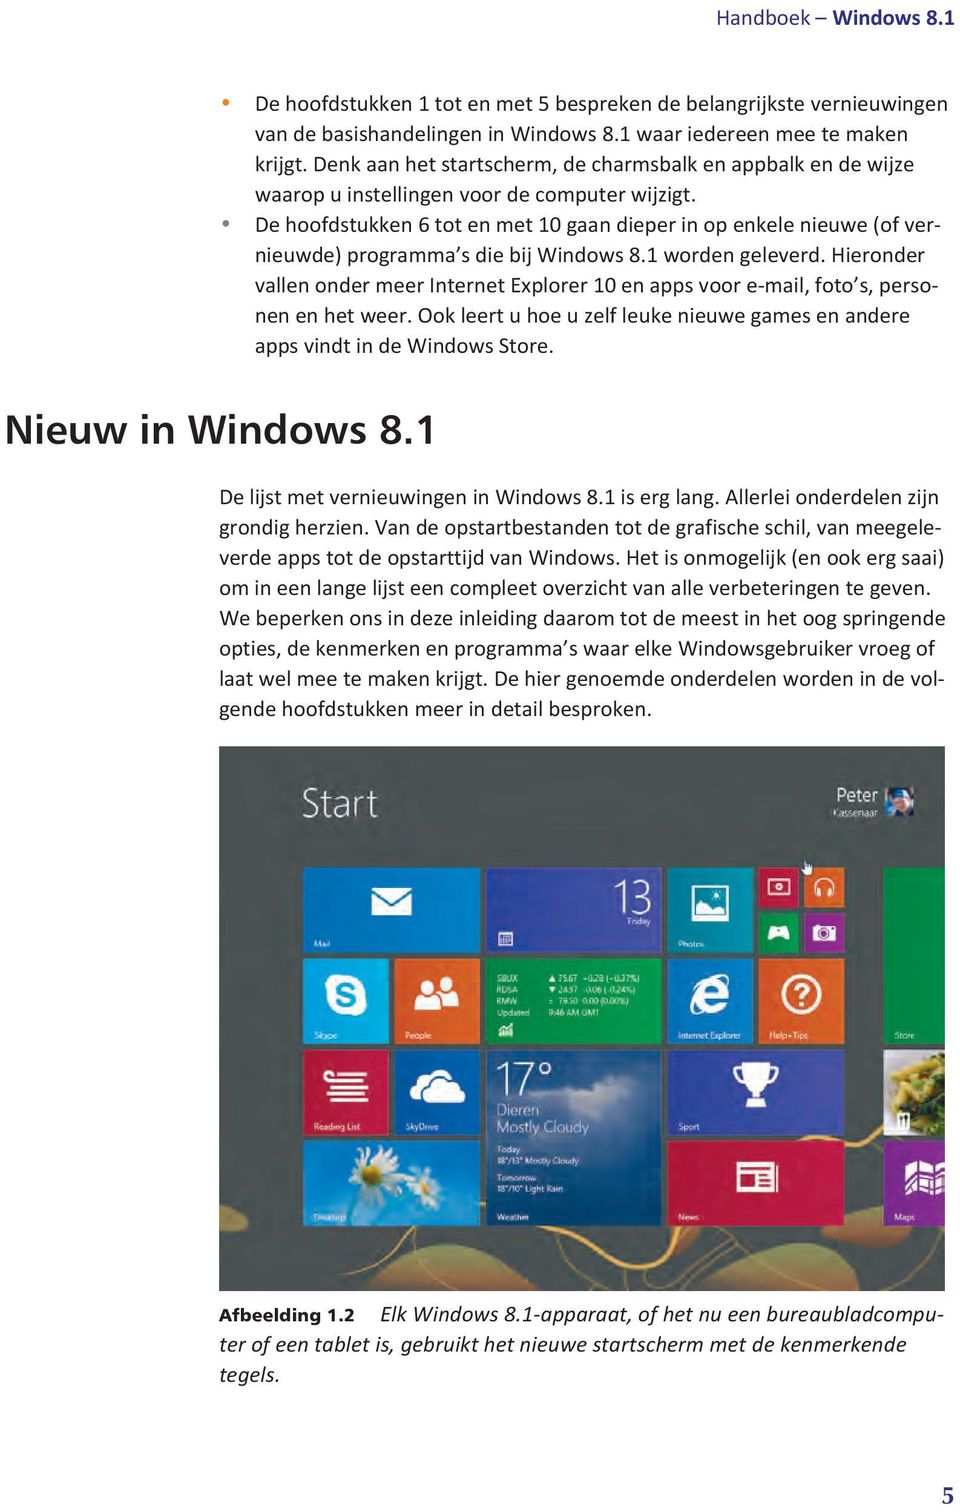 De hoofdstukken 6 tot en met 10 gaan dieper in op enkele nieuwe (of vernieuwde) programma s die bij Windows 8.1 worden geleverd.